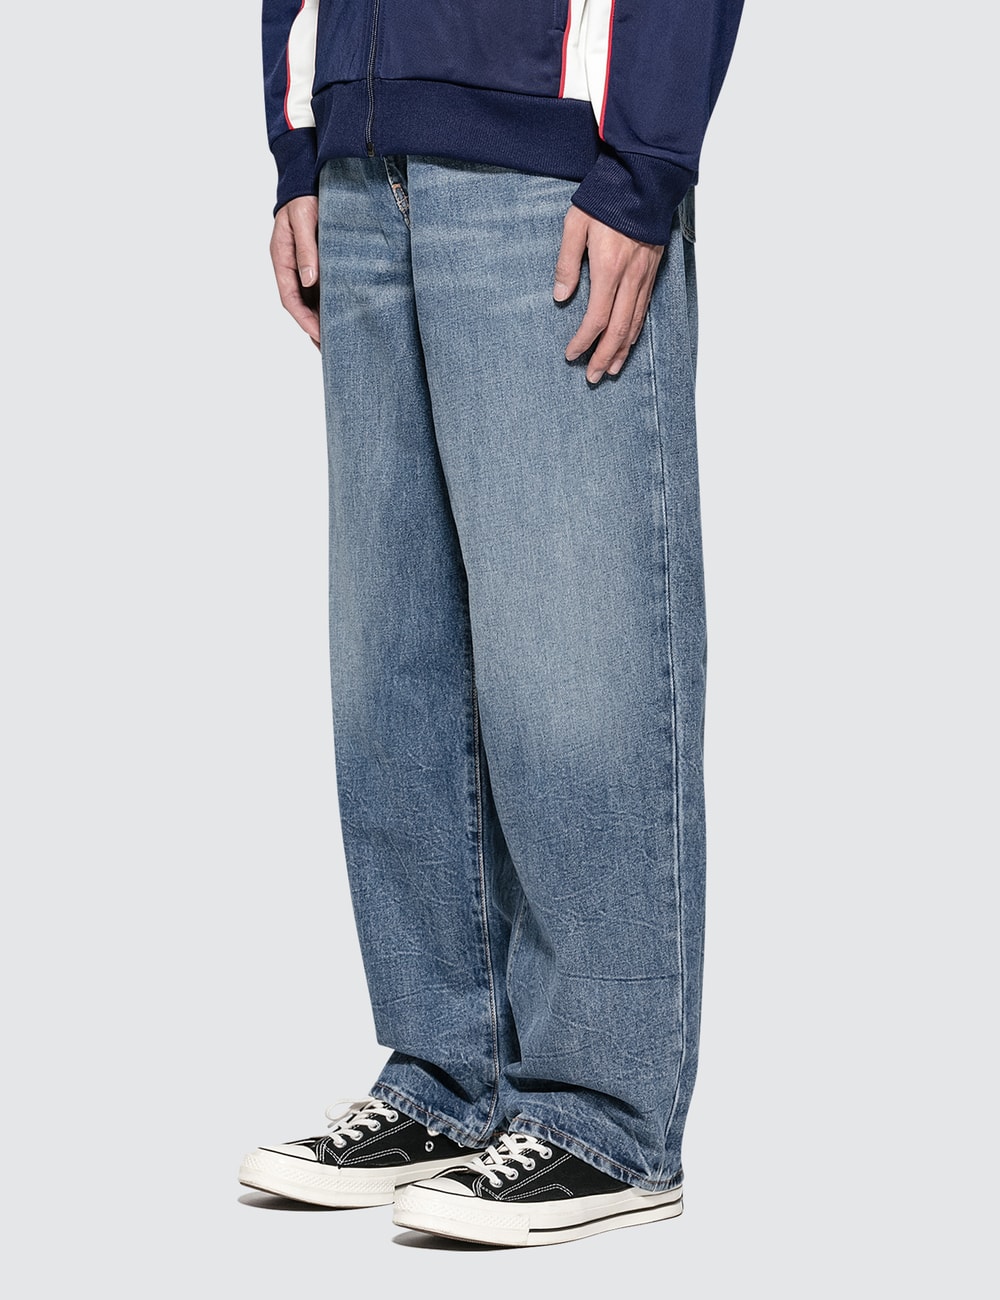 Levi's - RT Baggy Double Decker Jeans | HBX